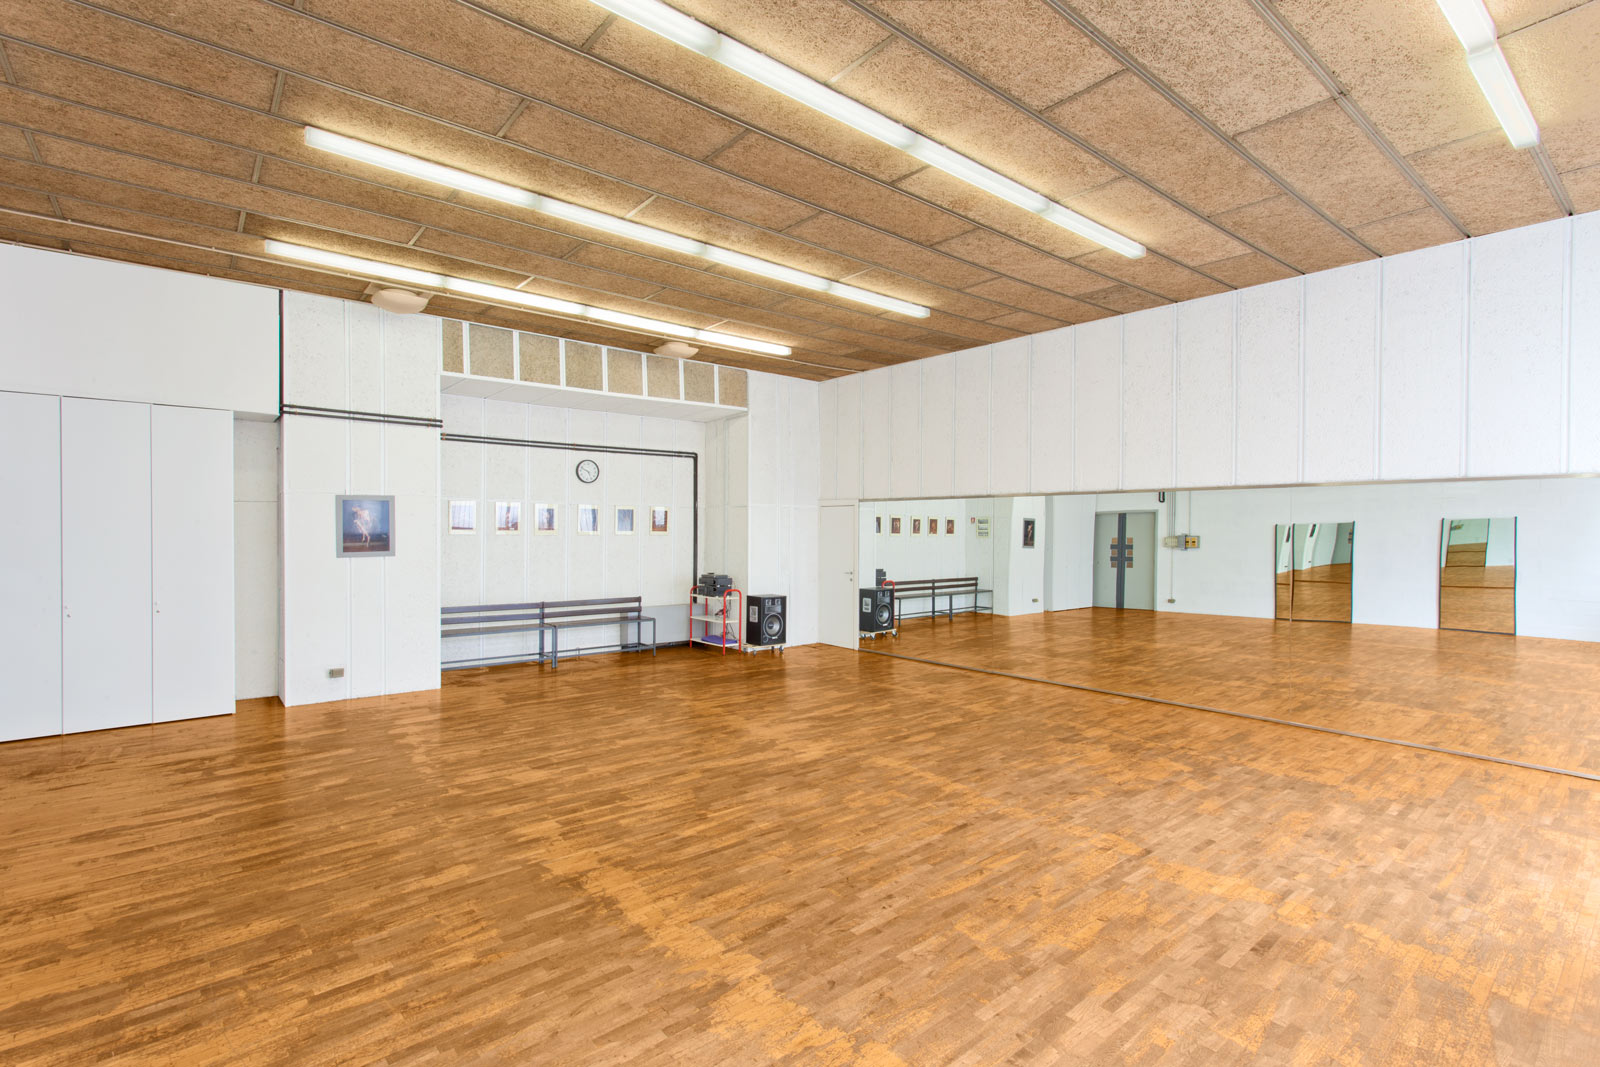 Accademia Arte Bergamo - Sale didattiche e sale ballo